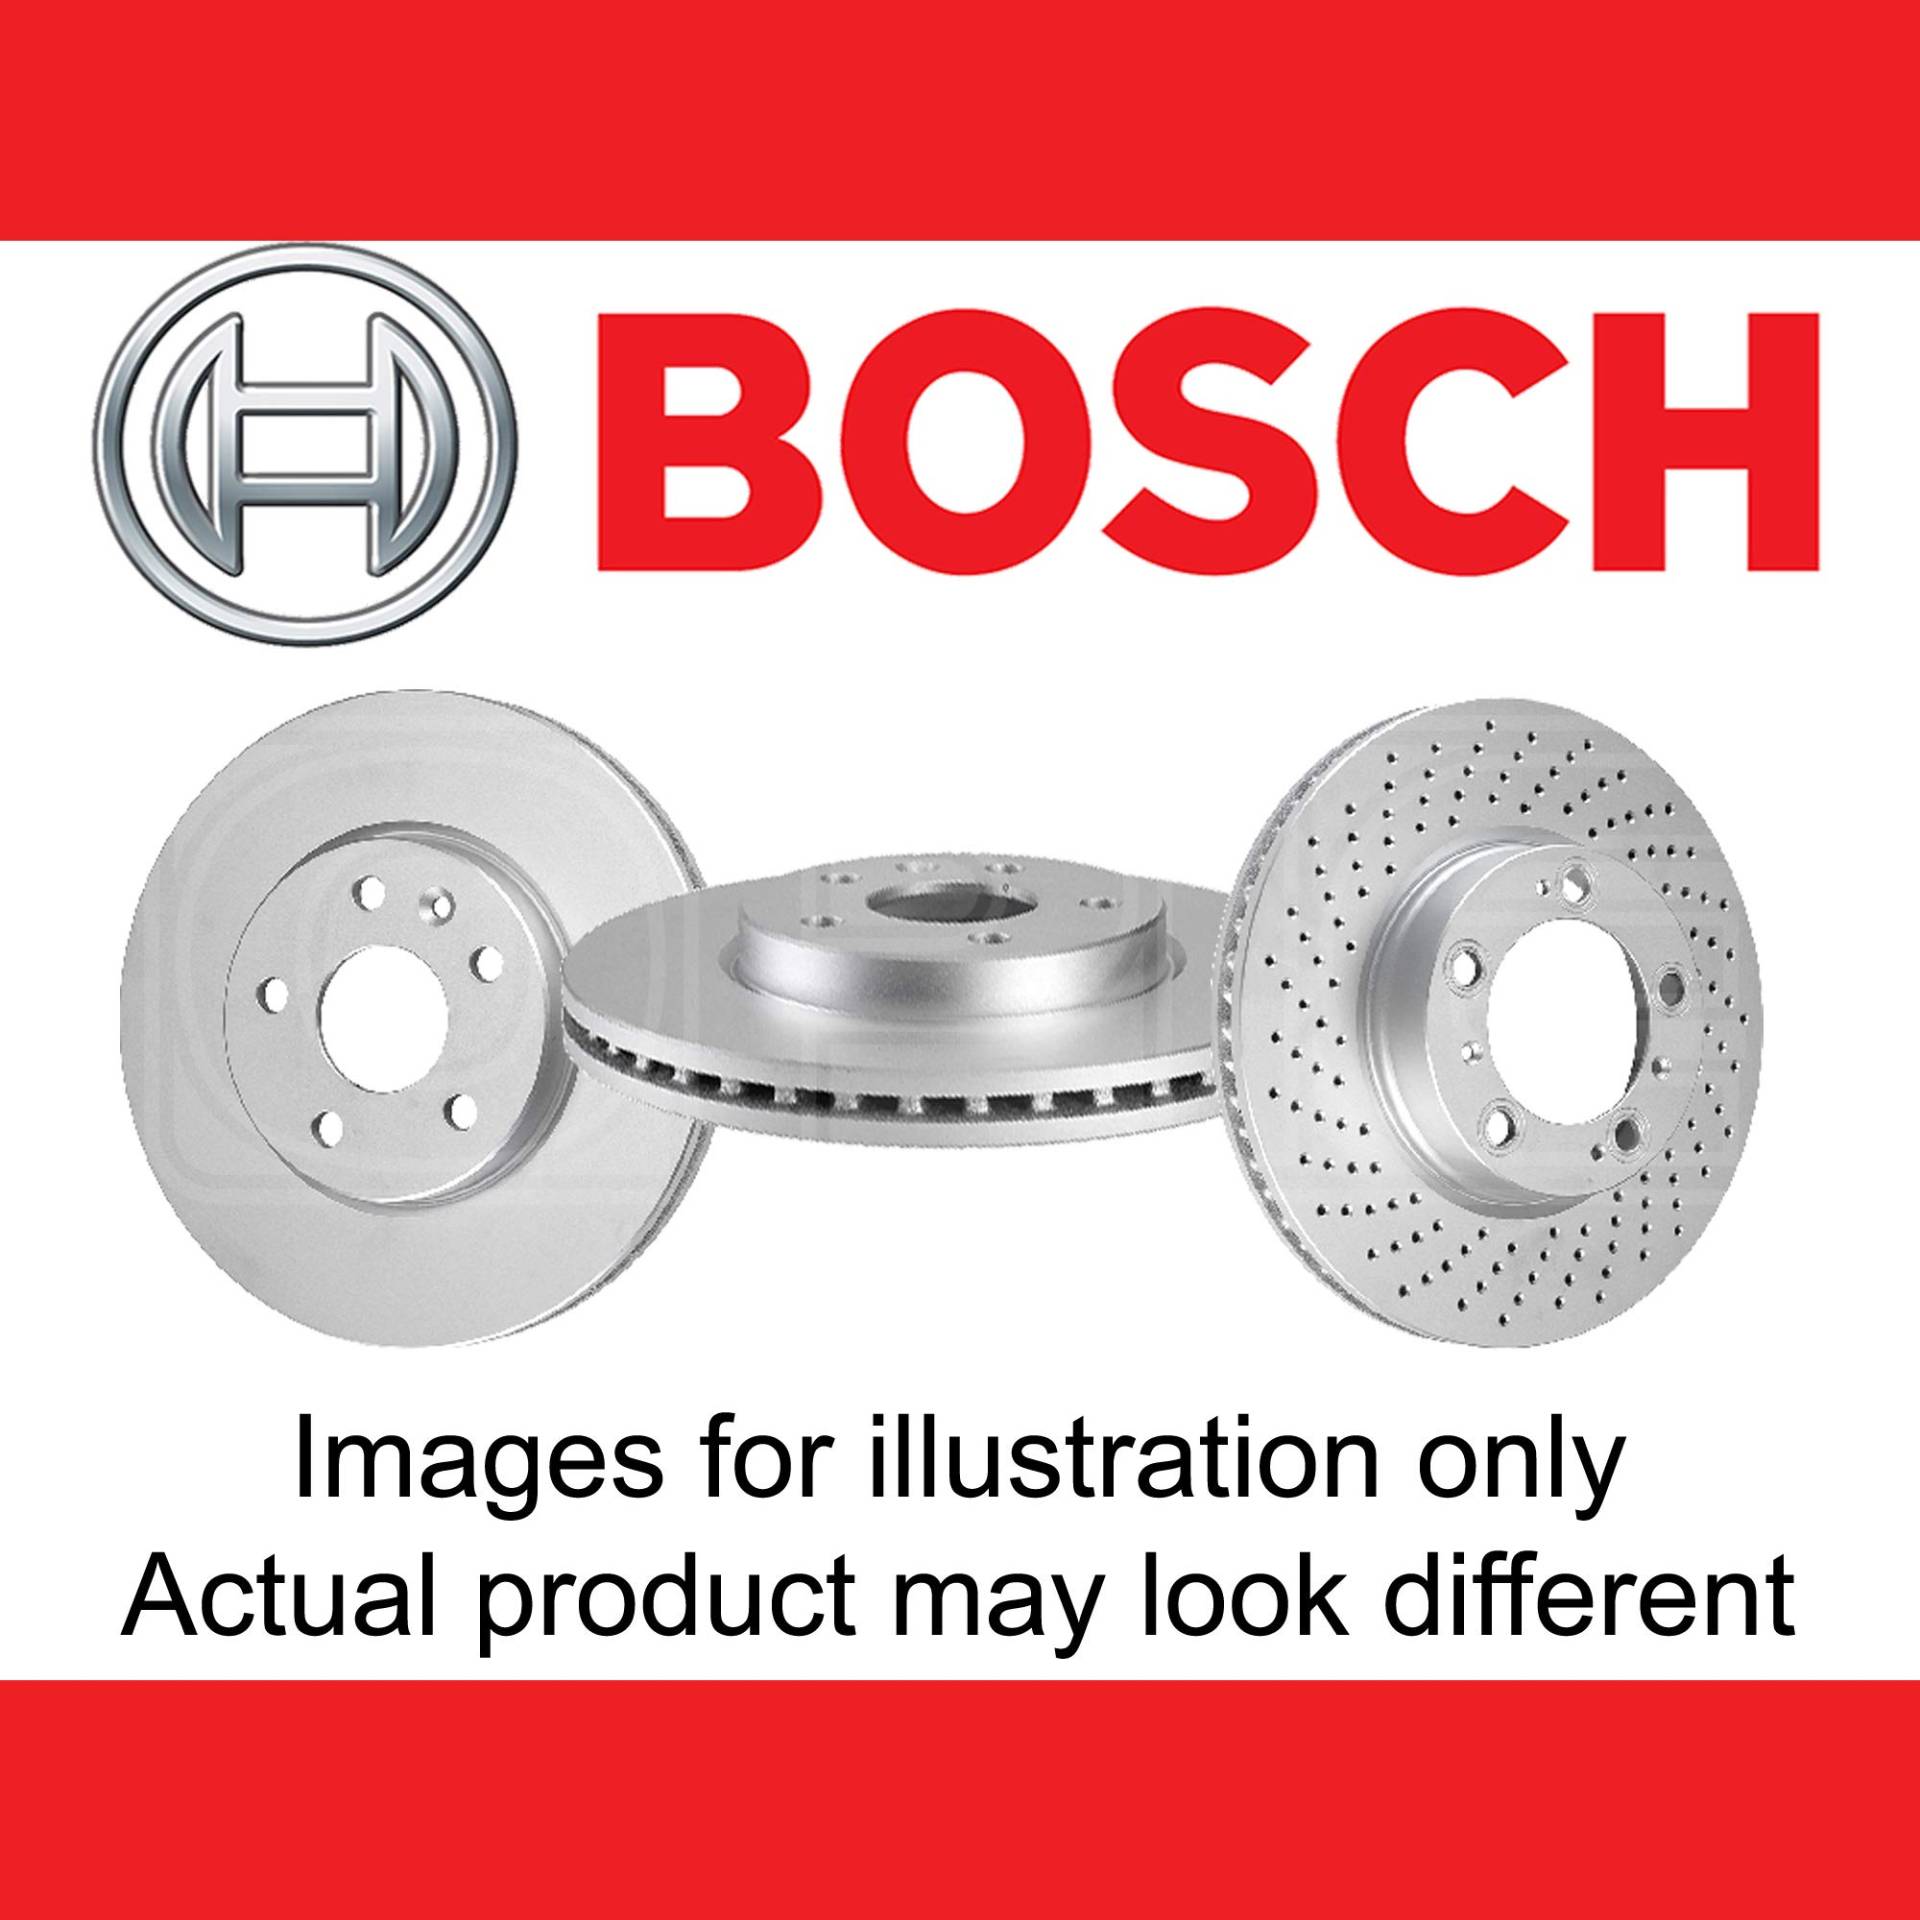 Bosch BD1838 Bremsscheiben - Vorderachse - ECE-R90 Zertifizierung - zwei Bremsscheiben pro Set von Bosch Automotive